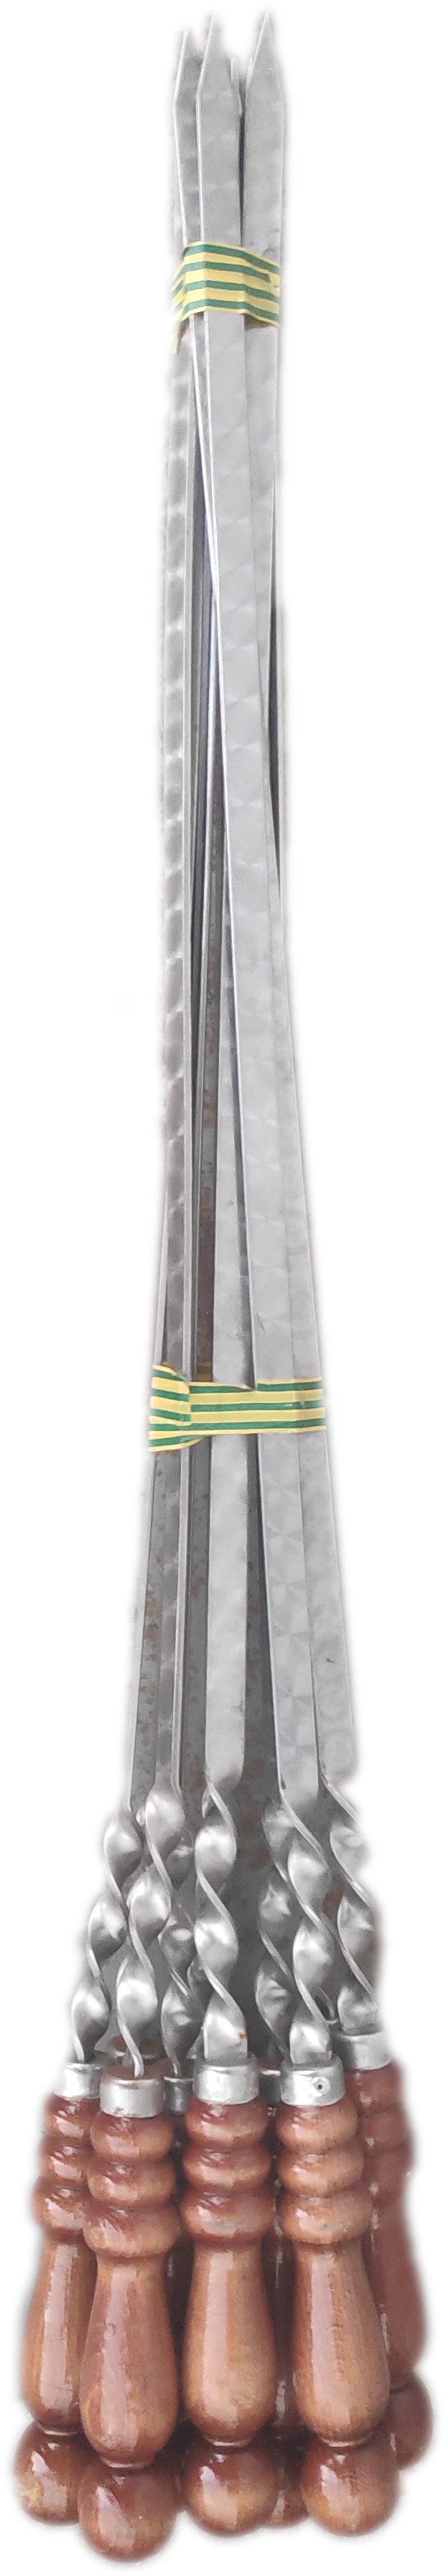 Шампур нержавейка с деревянной ручкой 50 см. (10)